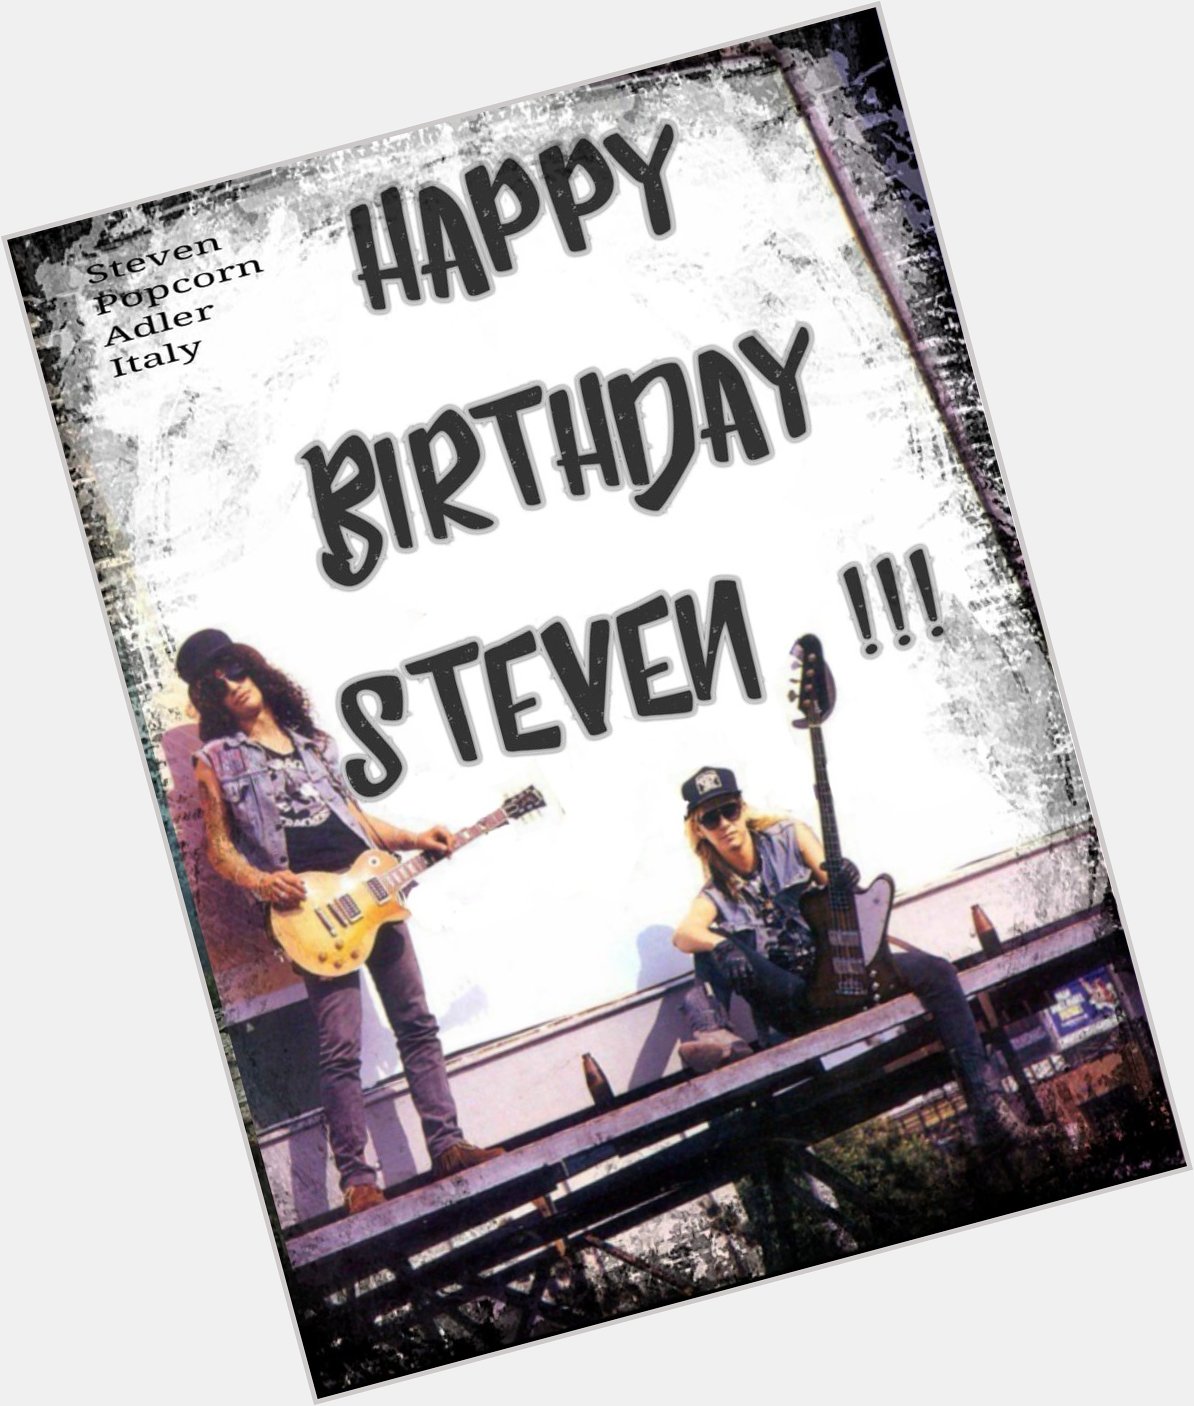  Happy birthday Steven Adler! The gunners love you        